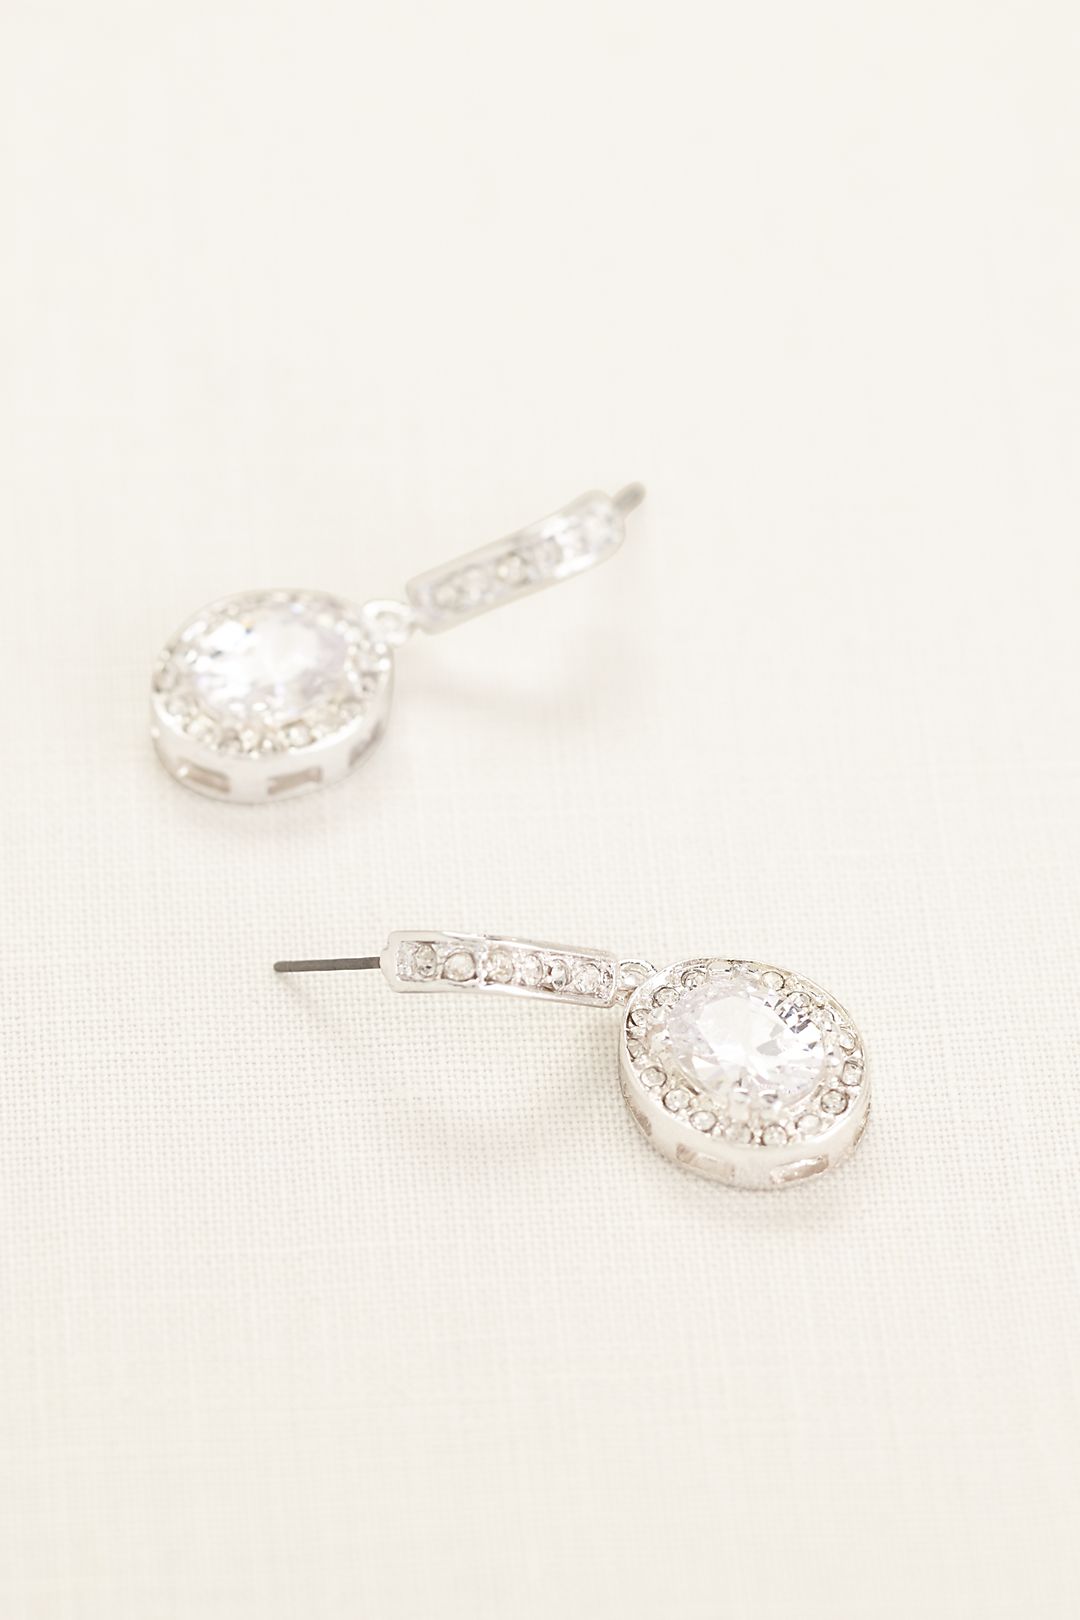 Pave Crystal Drop Earrings Image 1